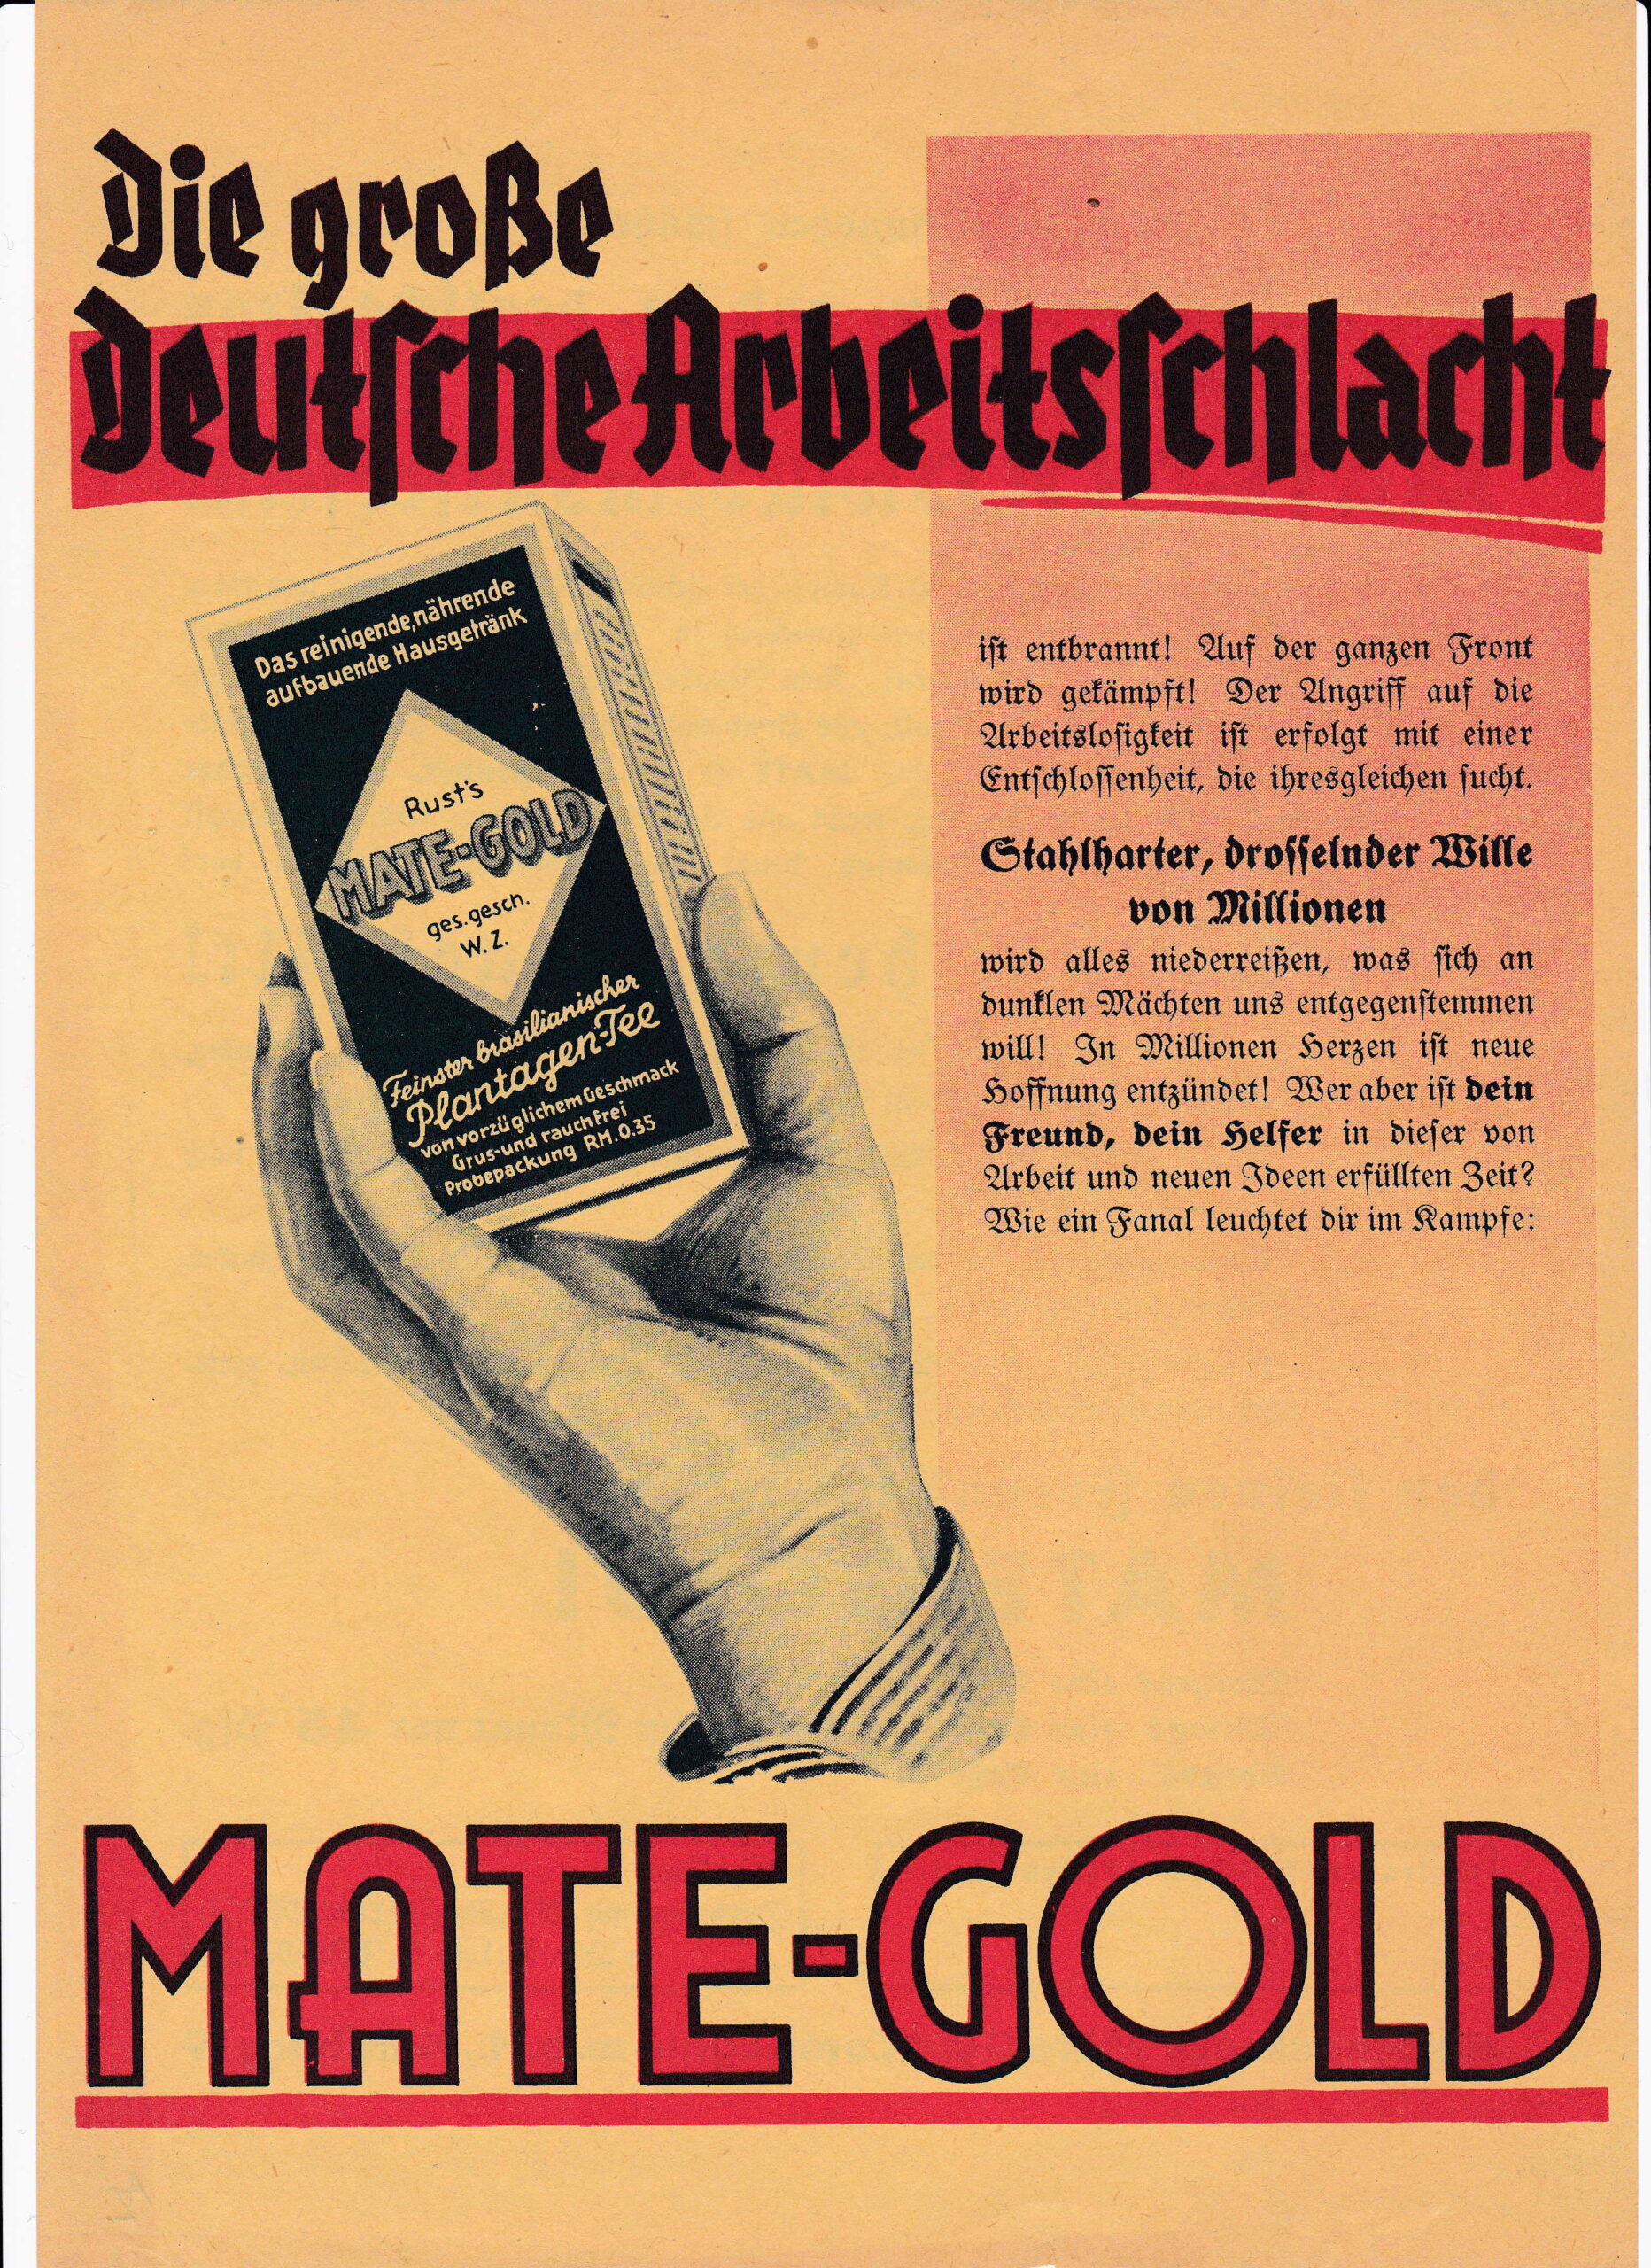 Abbildung 22: Mate-Gold als Treibstoff für die Arbeitsschlacht der Nazis